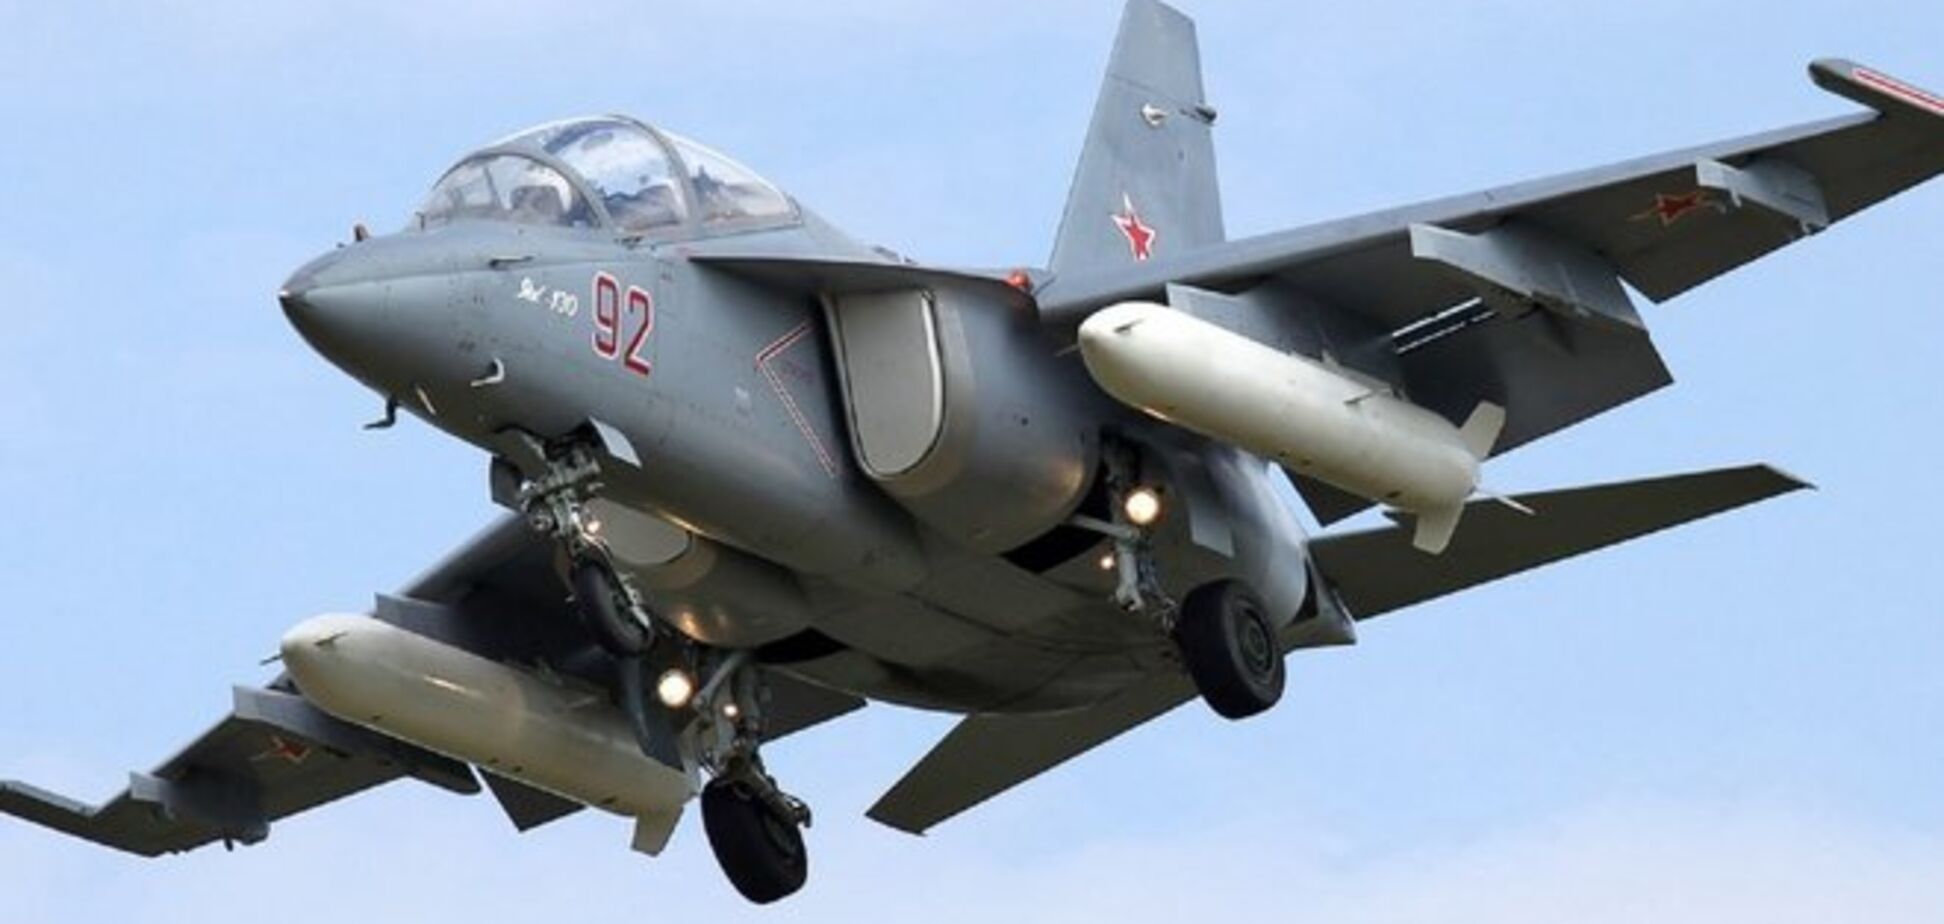 Во время выборов Президента Украины Россия проведет авиаучения вблизи границы